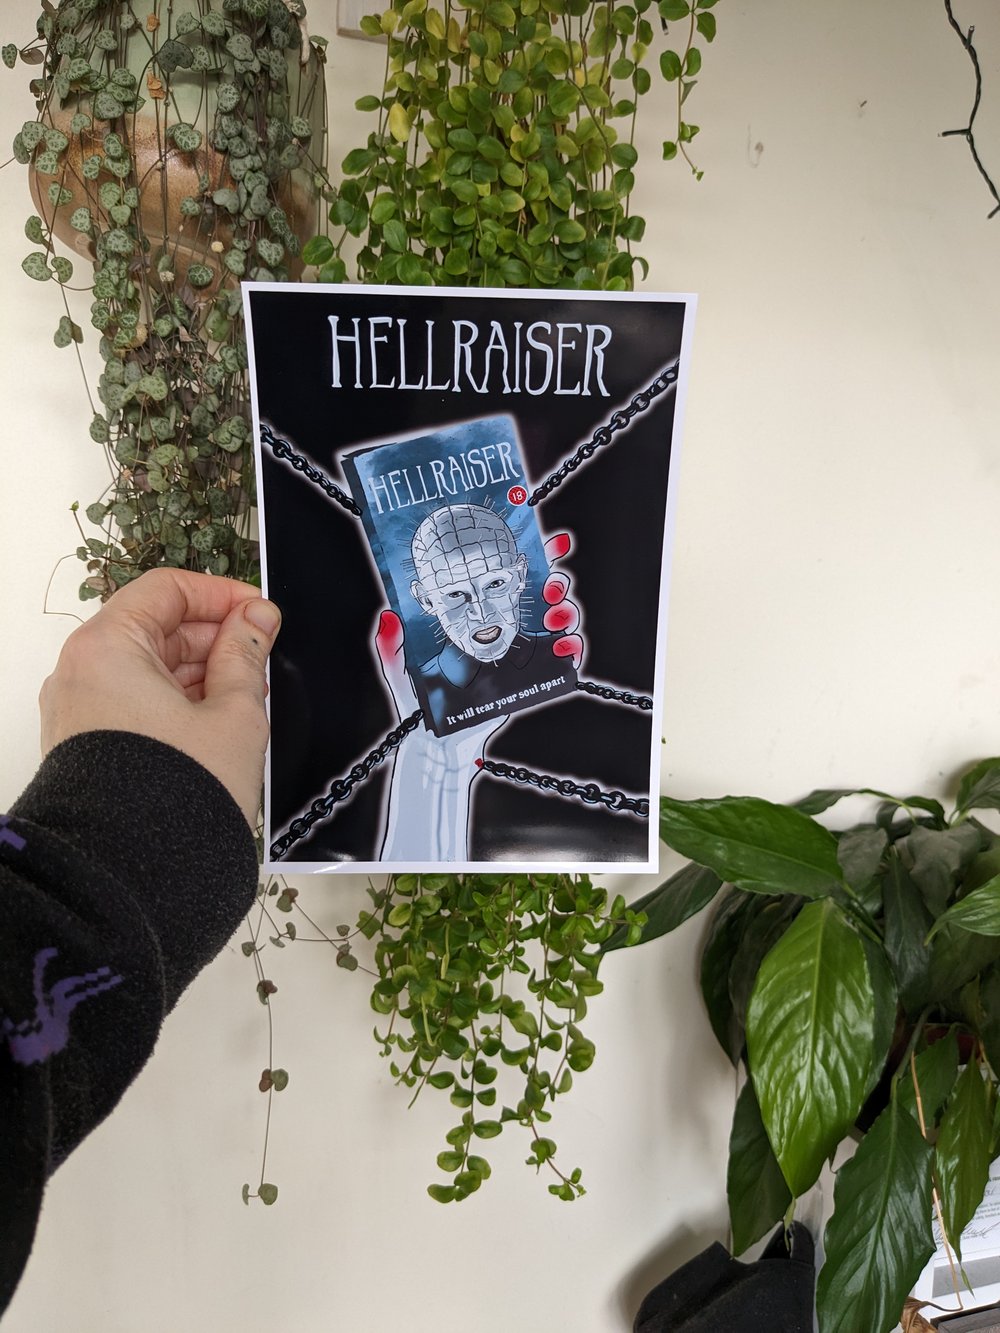 Hellraiser VHS Grab Illustration